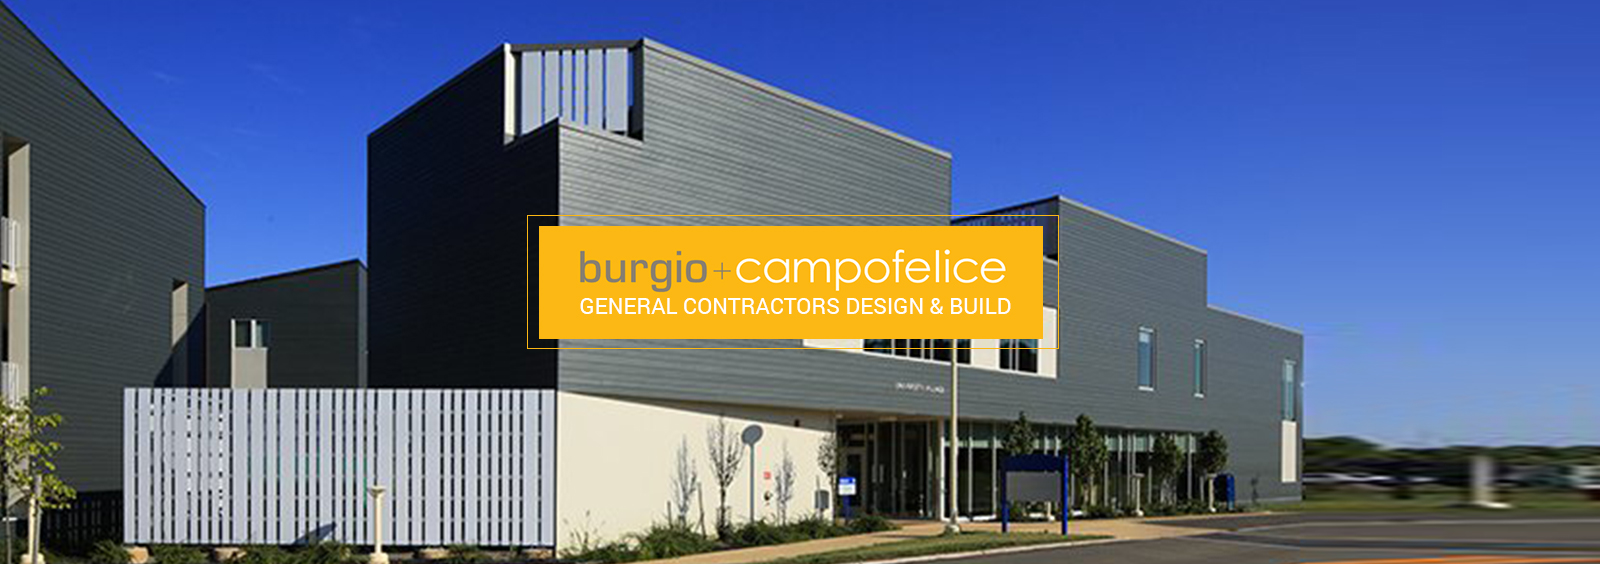 Burgio & Campofelice - general contractors design-build